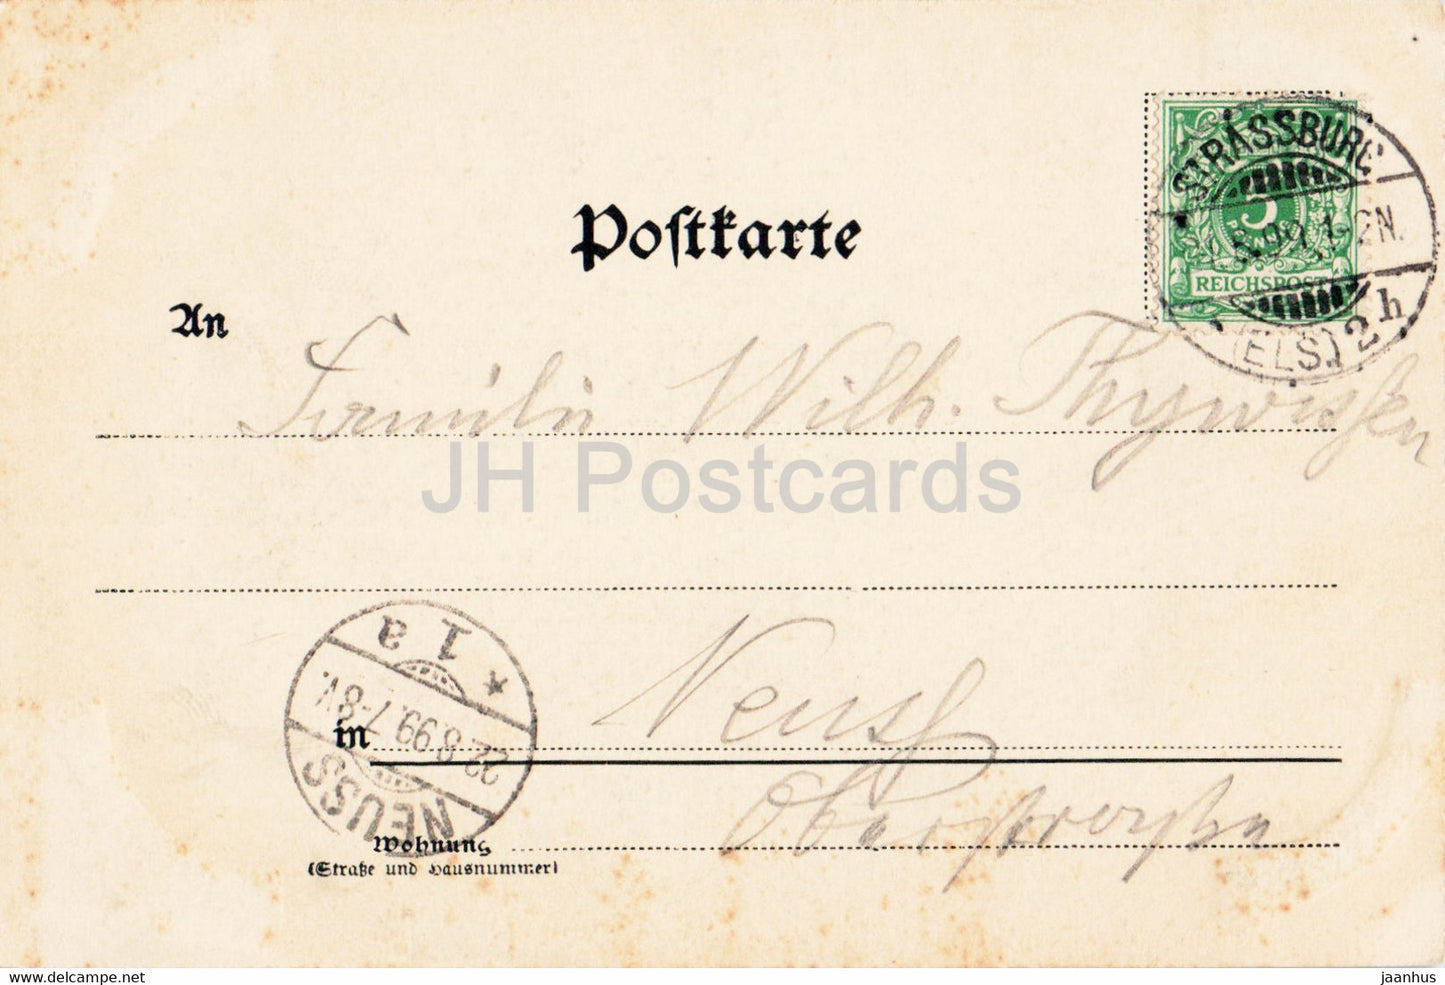 Strassburg i E - Strasbourg - Das Munster - La Cathedrale - cathedral - 981 - old postcard - 1899 - France - used